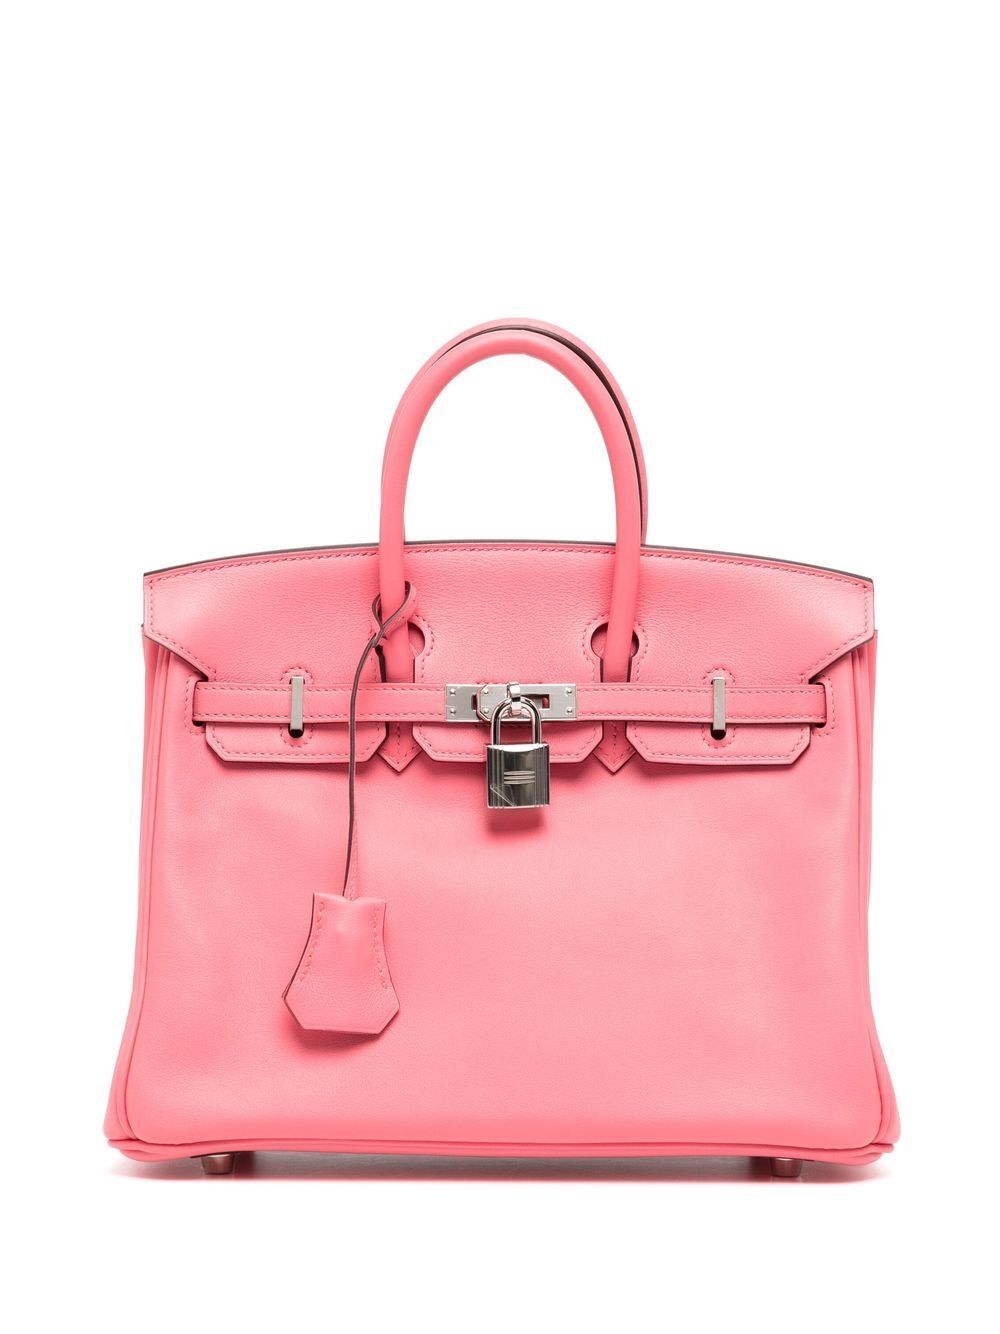 Hermès 2017 pre-owned Birkin 25 bag - Pink